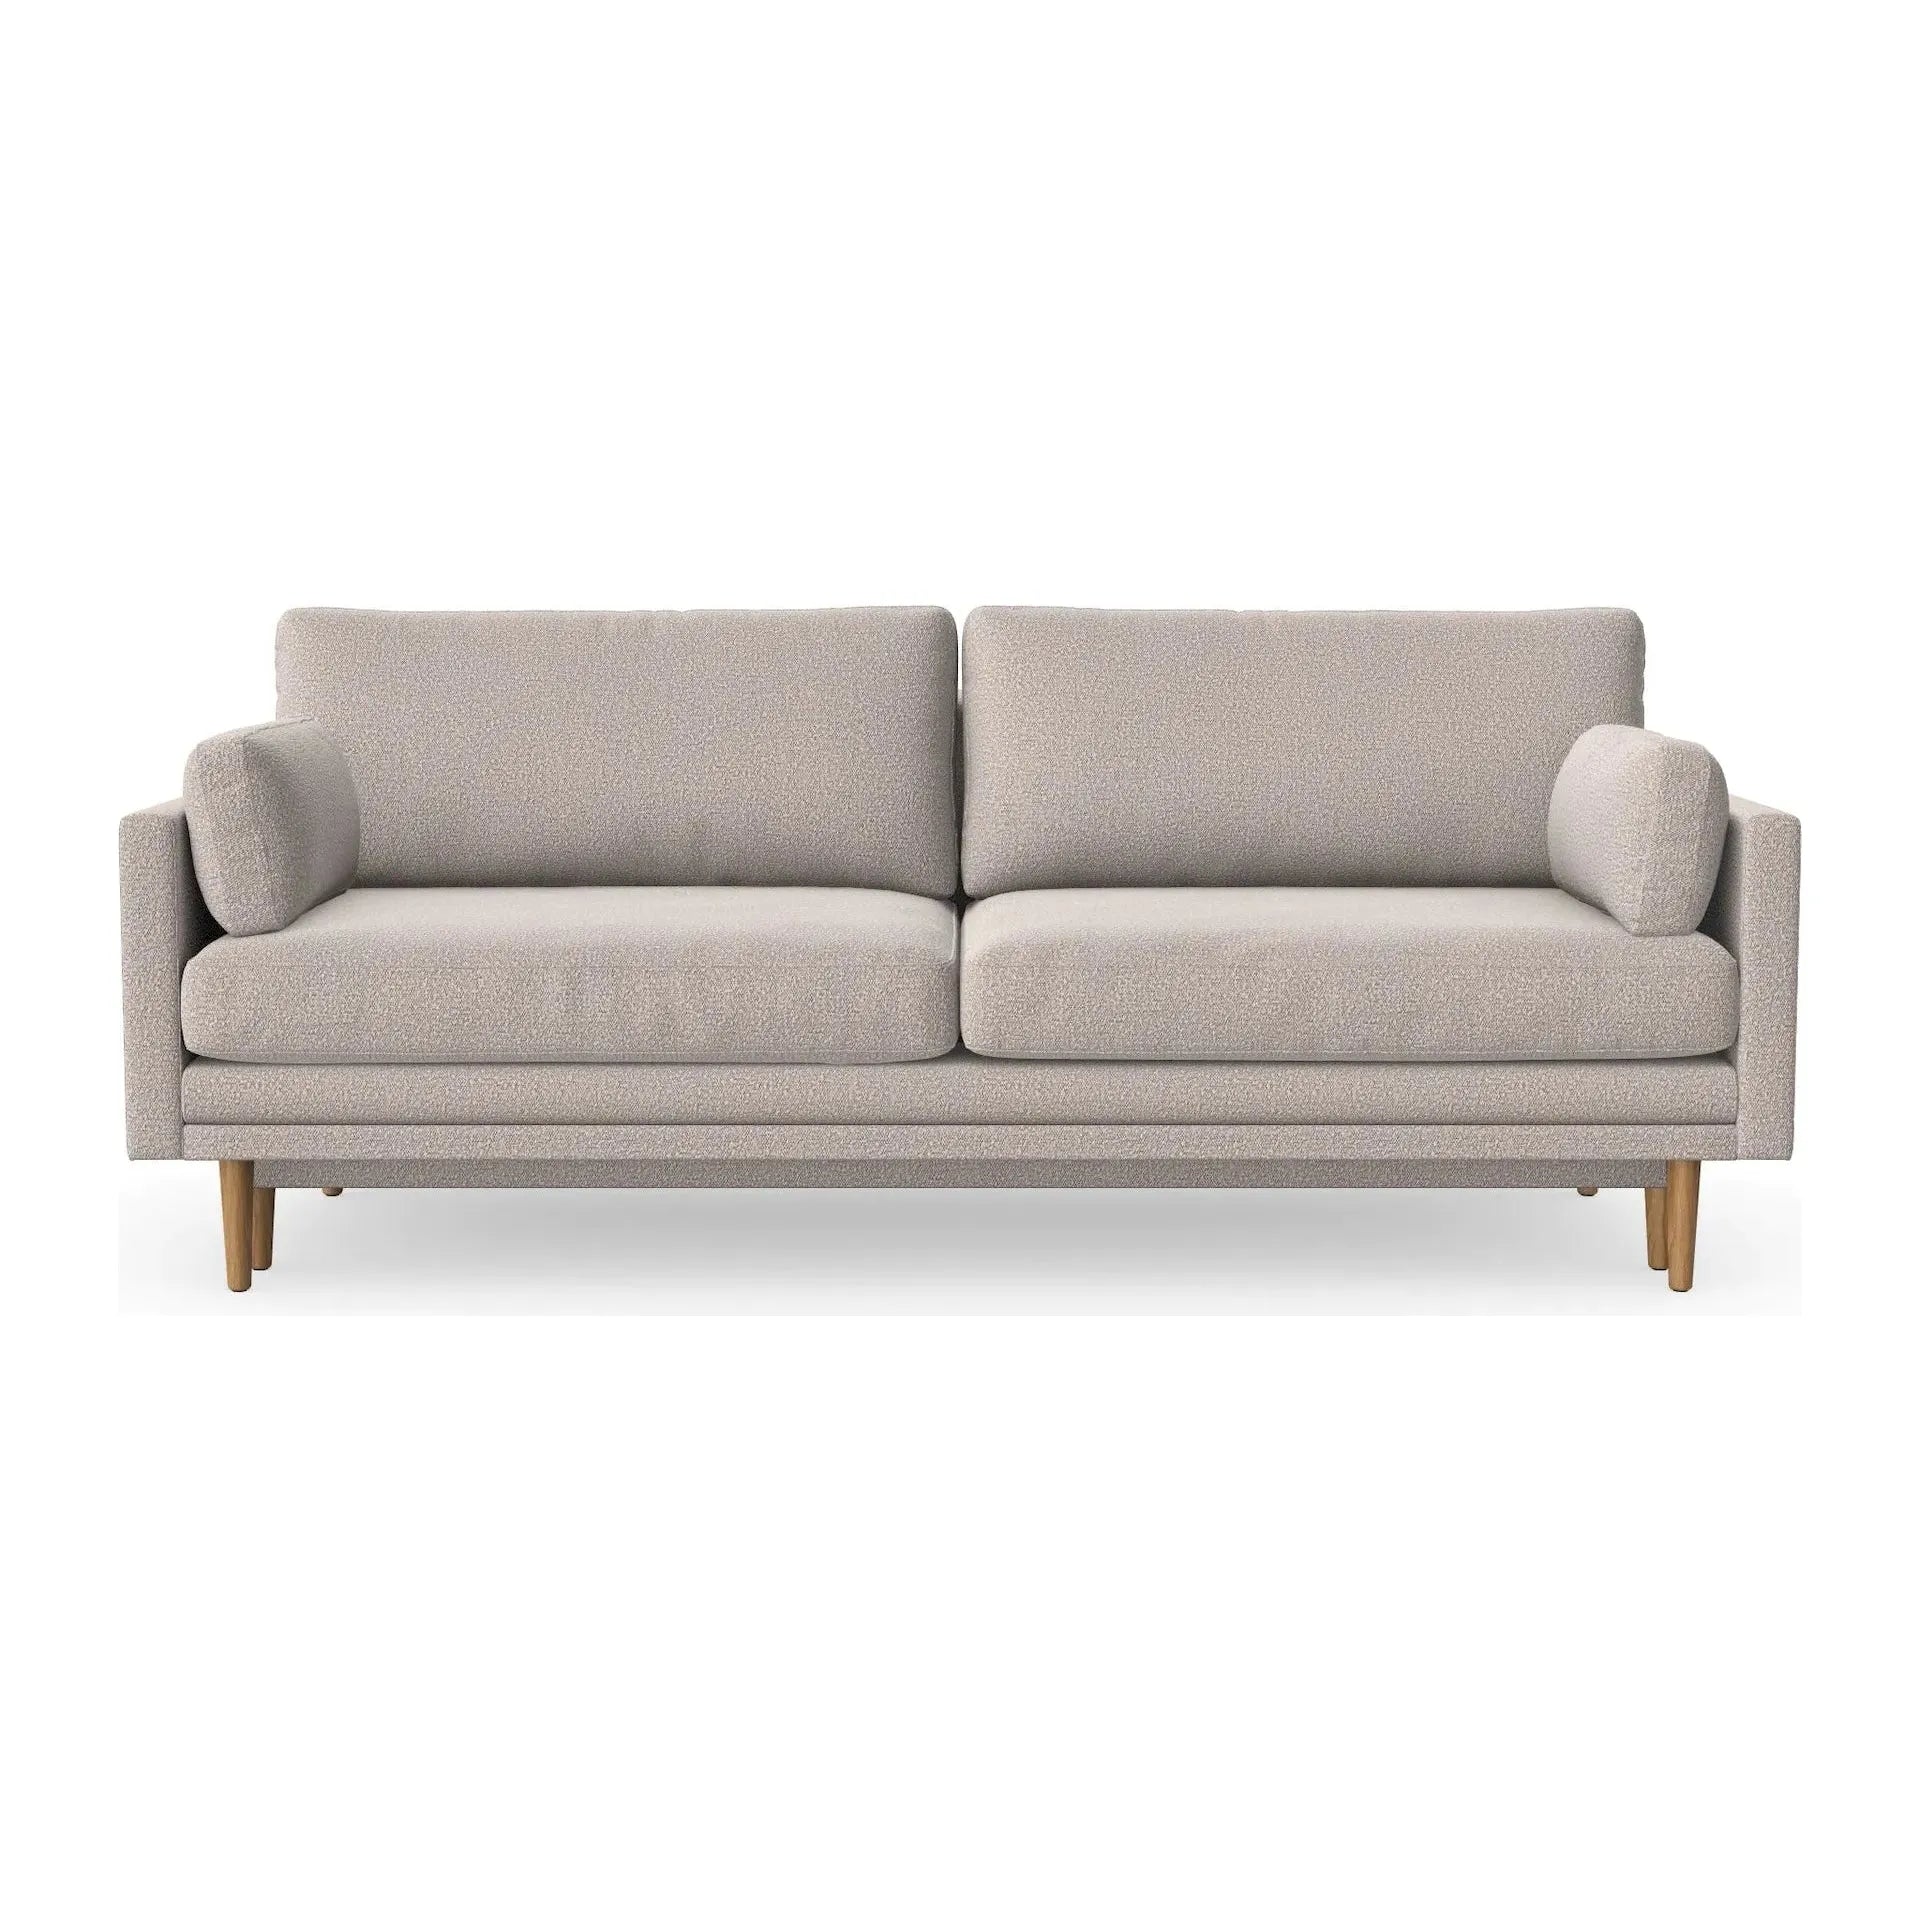 EMILLY 3 vietų sofa lova, šviesiai pilka spalva